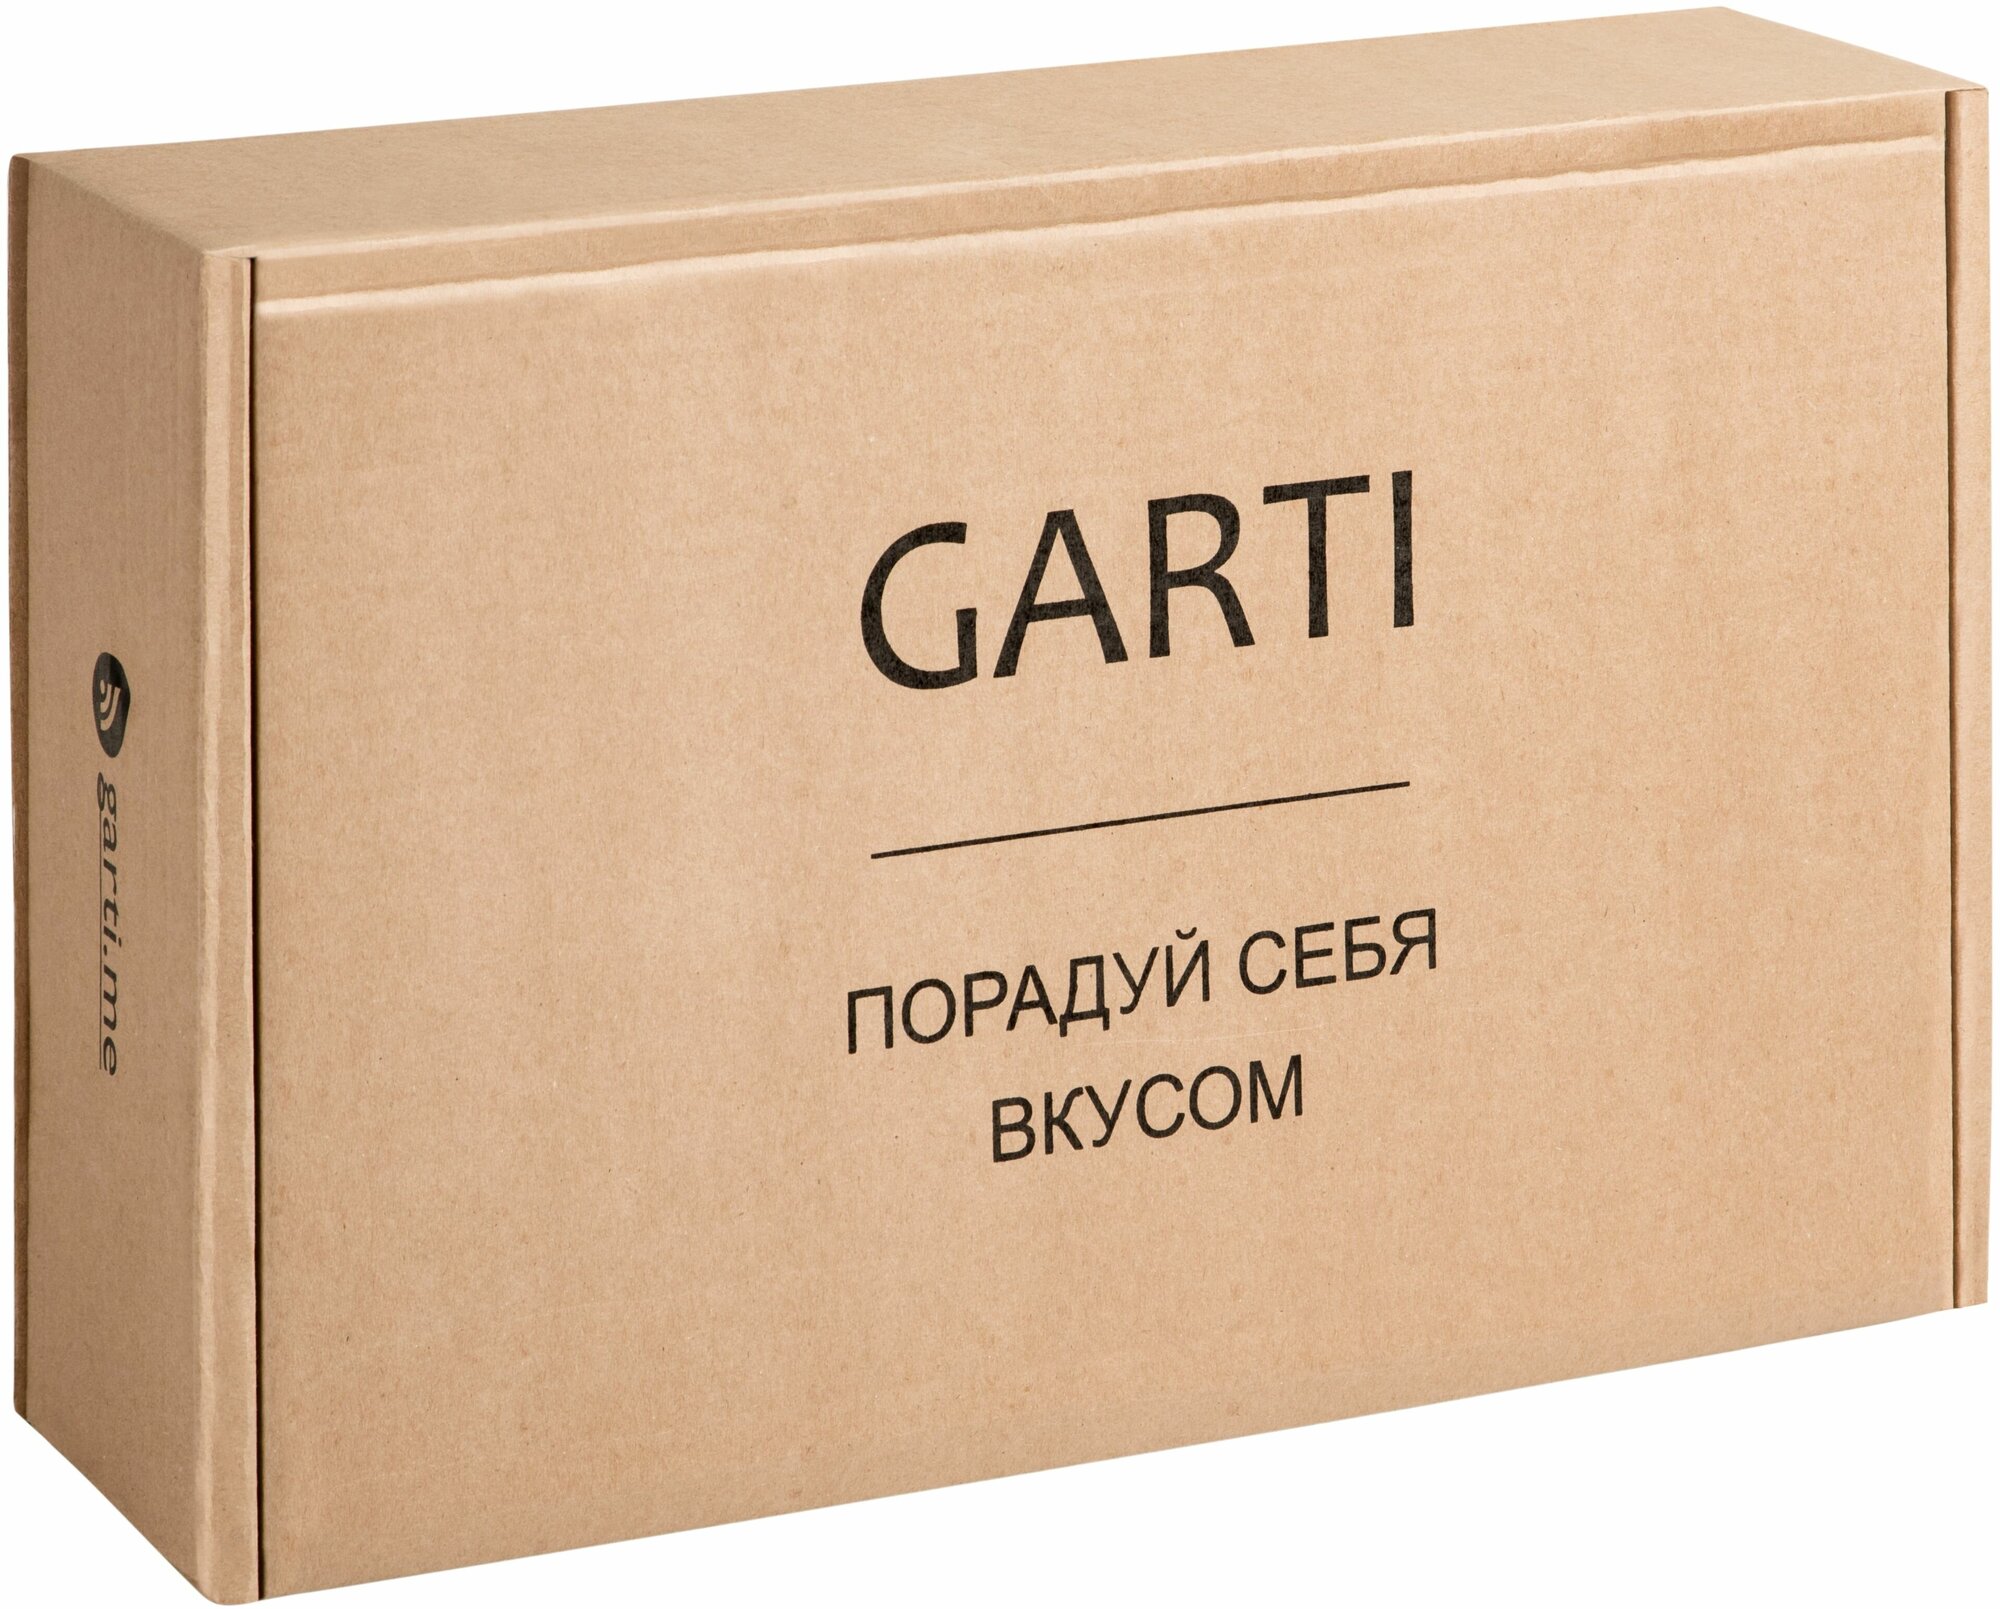 Garti / Набор разделочных досок из трёх изделий (две доски и двойная подставка) Garti PRIME Clean/Solid. surface - фотография № 11